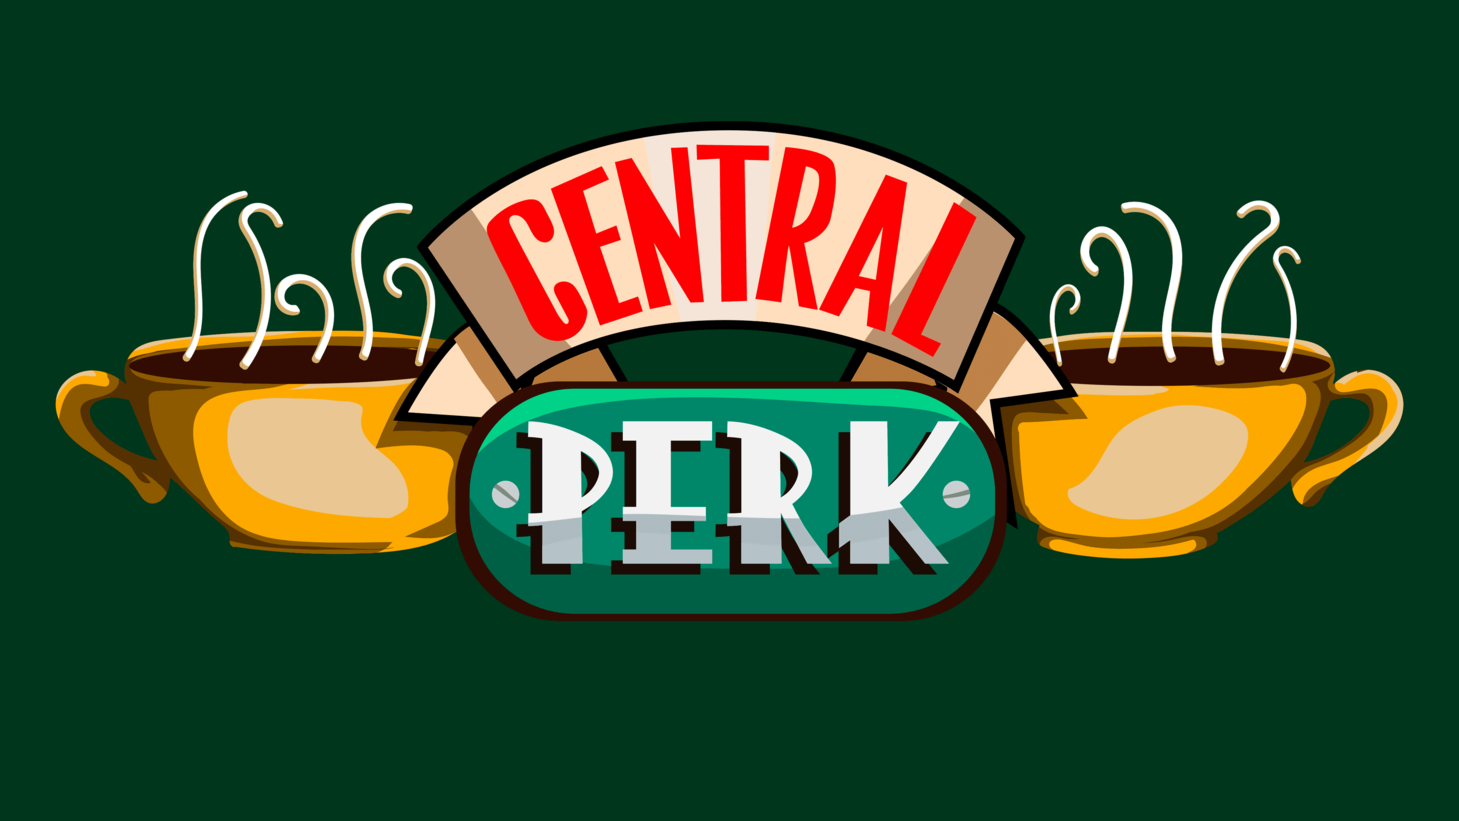 Central perk logo